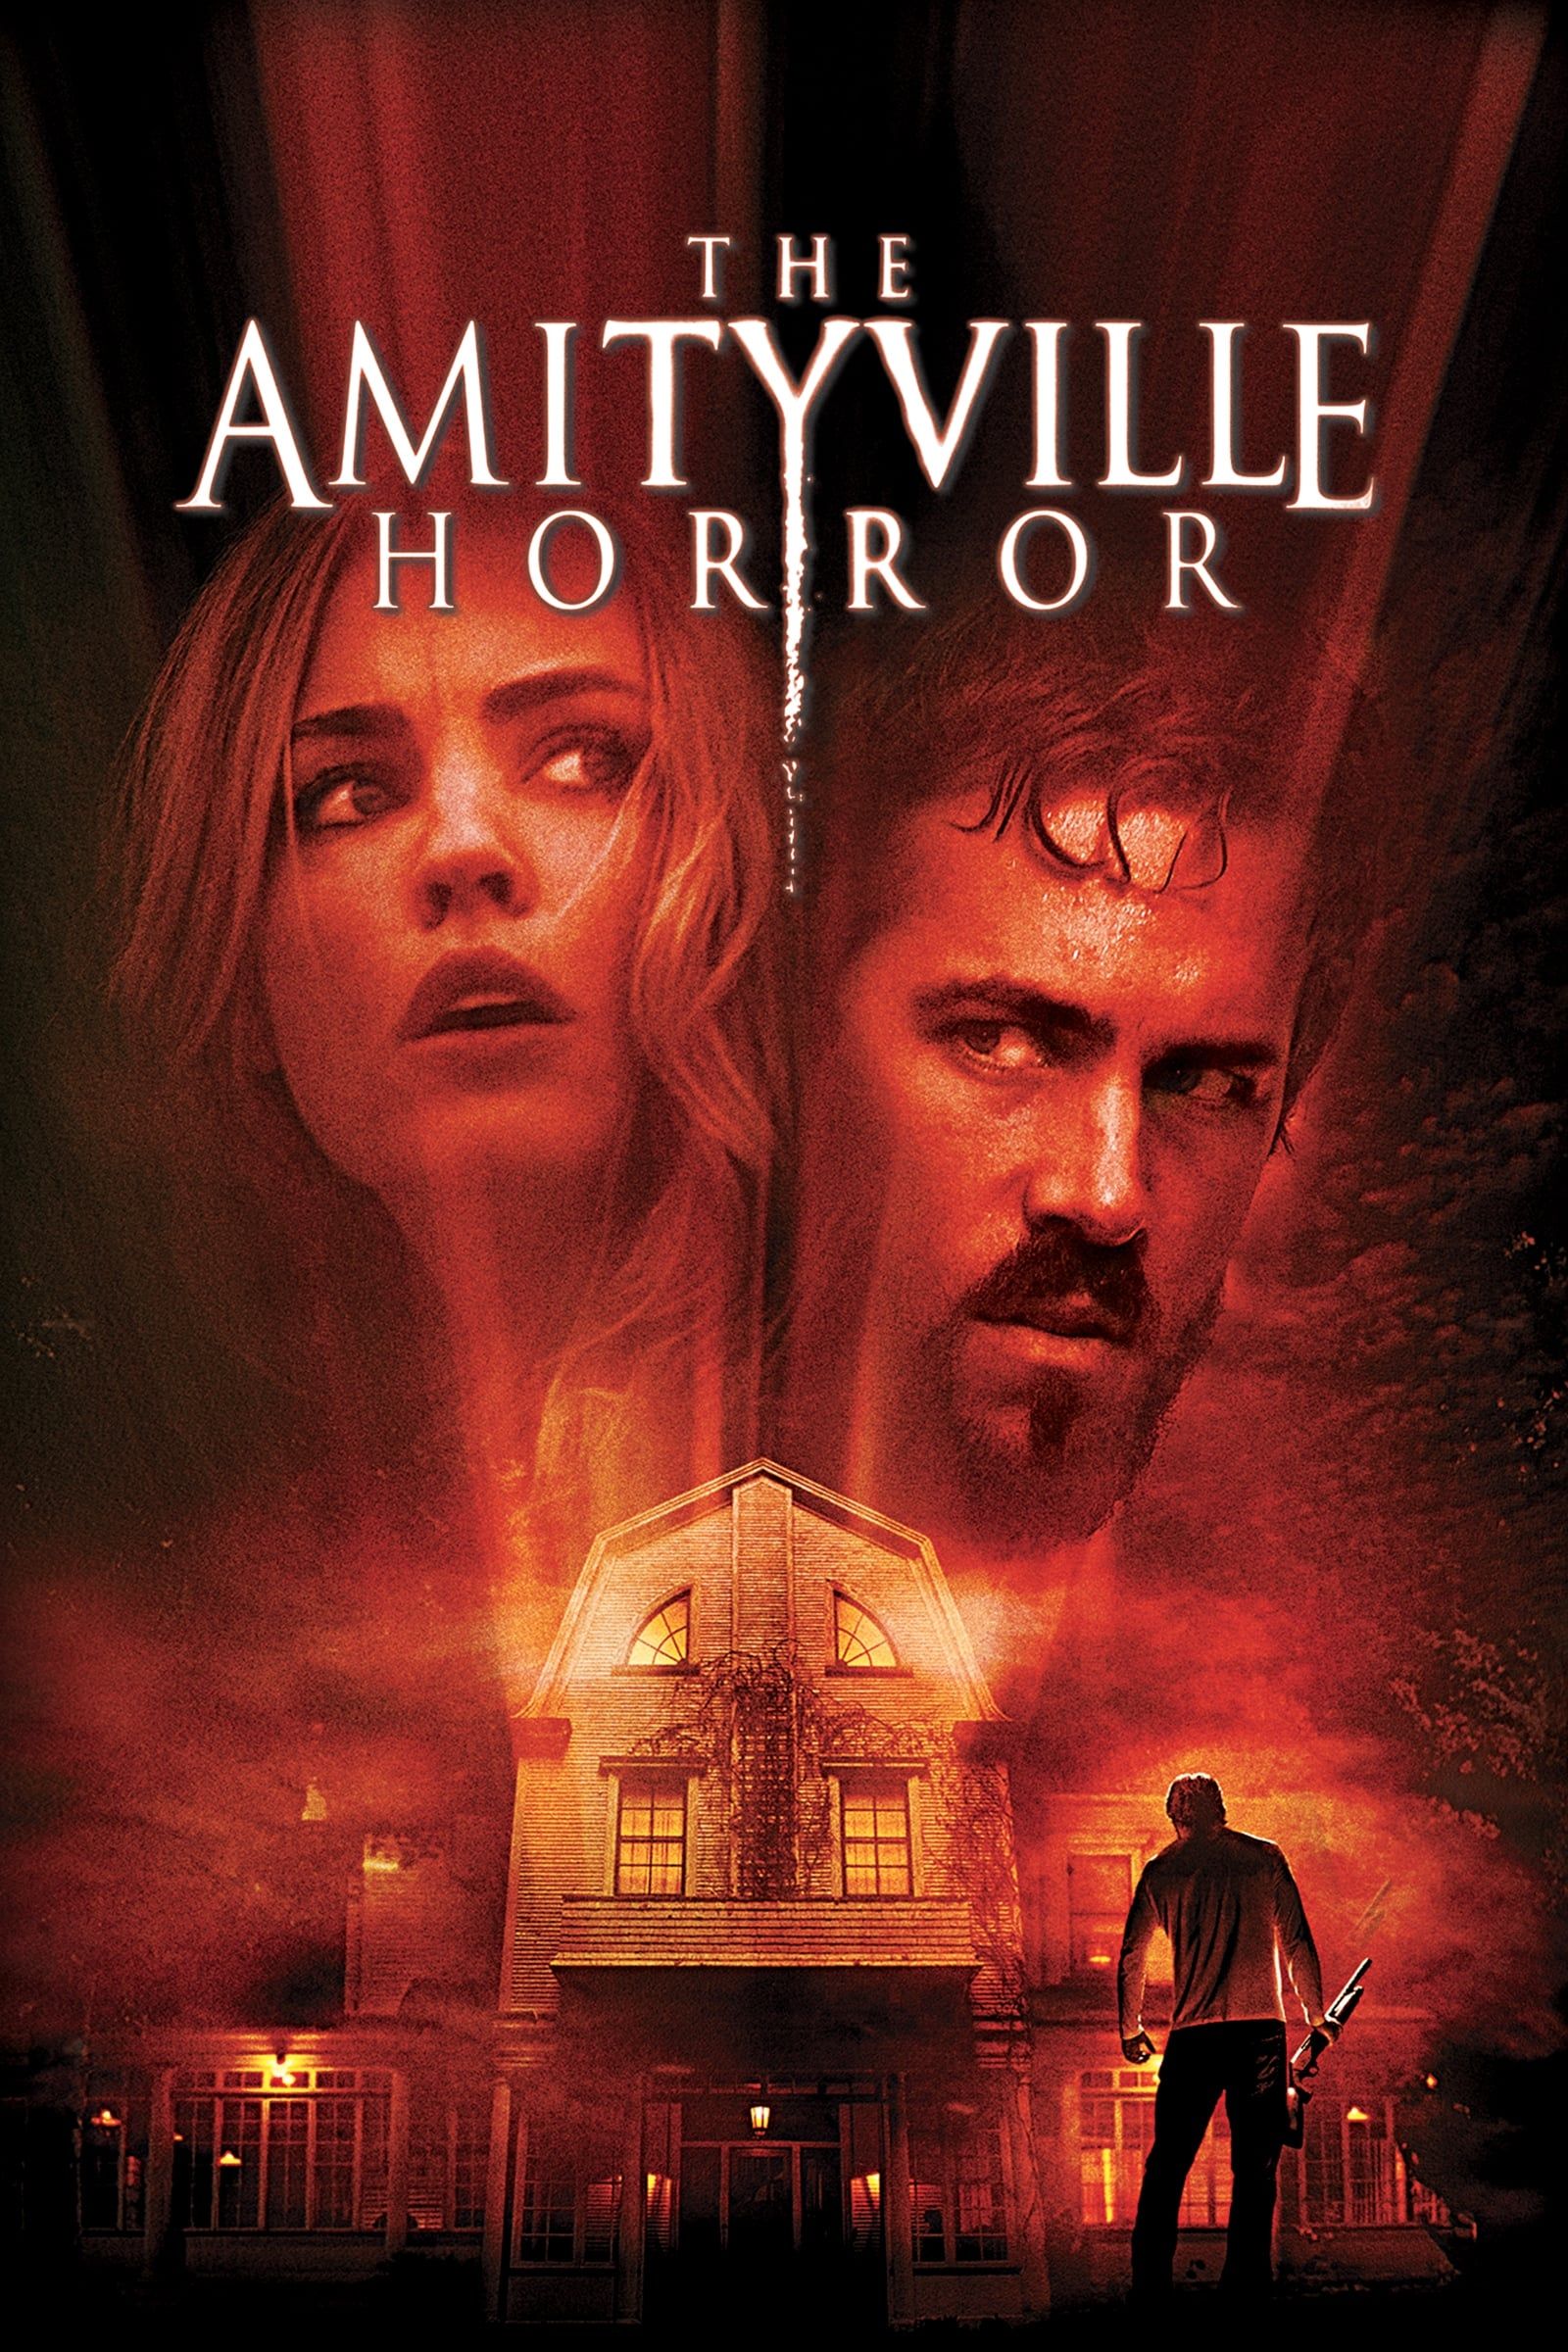 Watch The Amityville Horror (2005) Full Movie Online - Plex